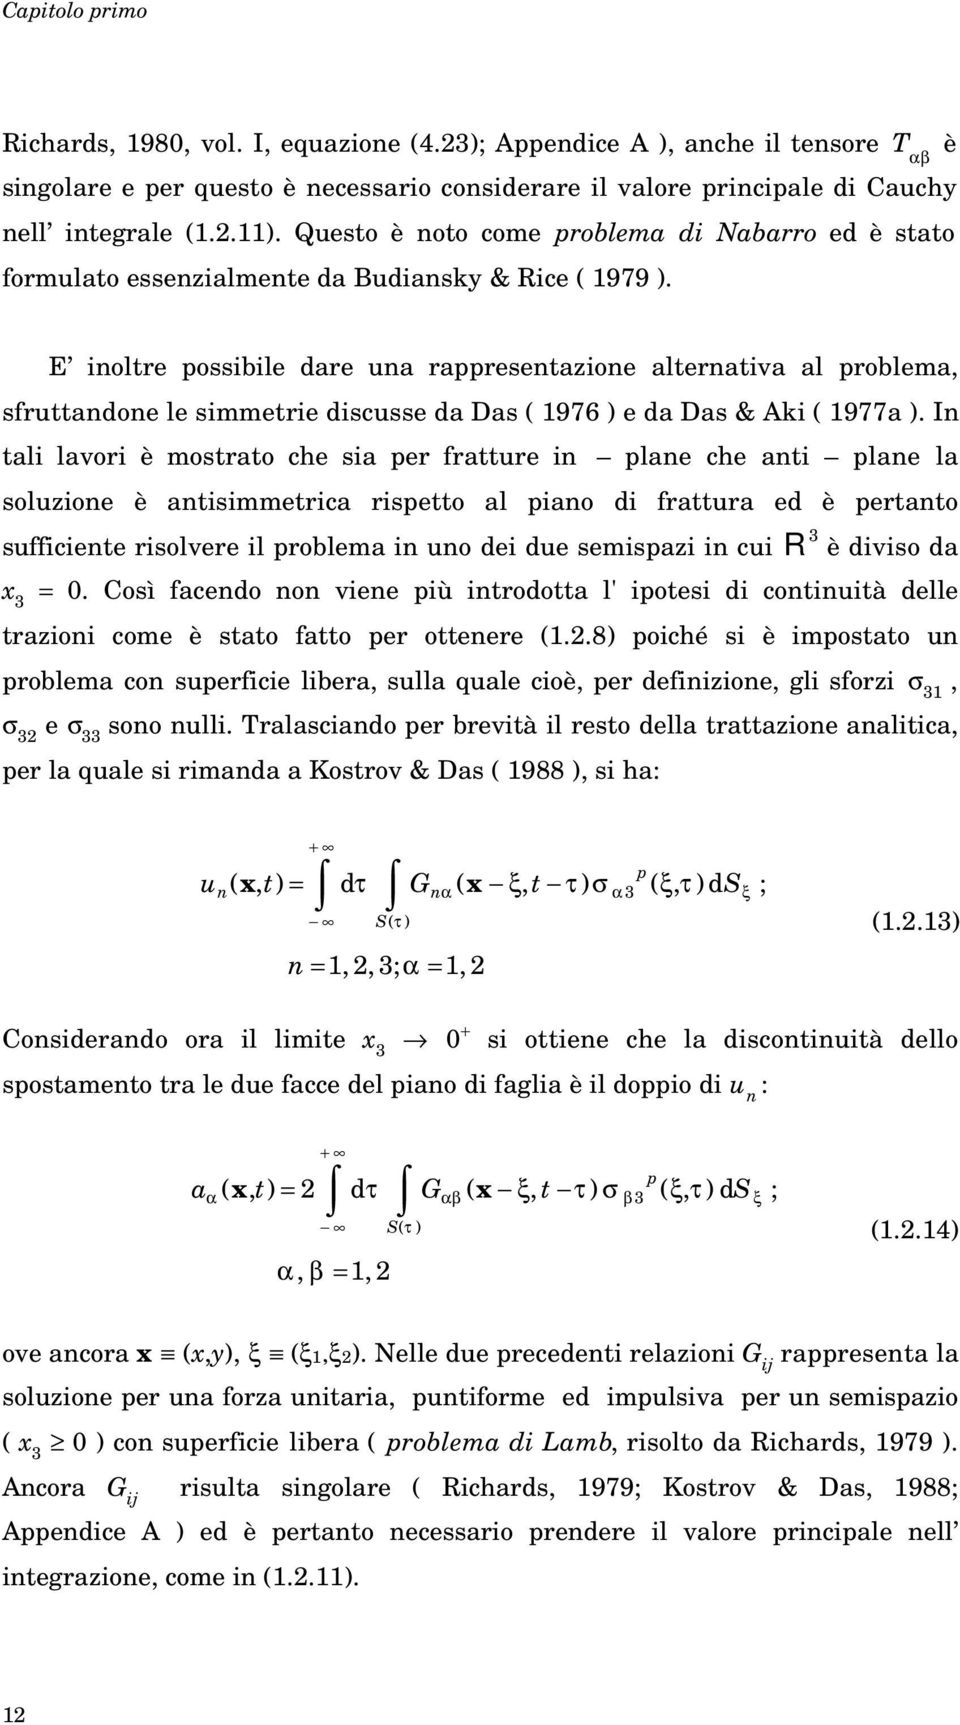 E ioltre possibile are a rappresetazioe alteratia al problema sfrttaoe le simmetrie iscsse a Das 1976 e a Das & Aki 1977a.